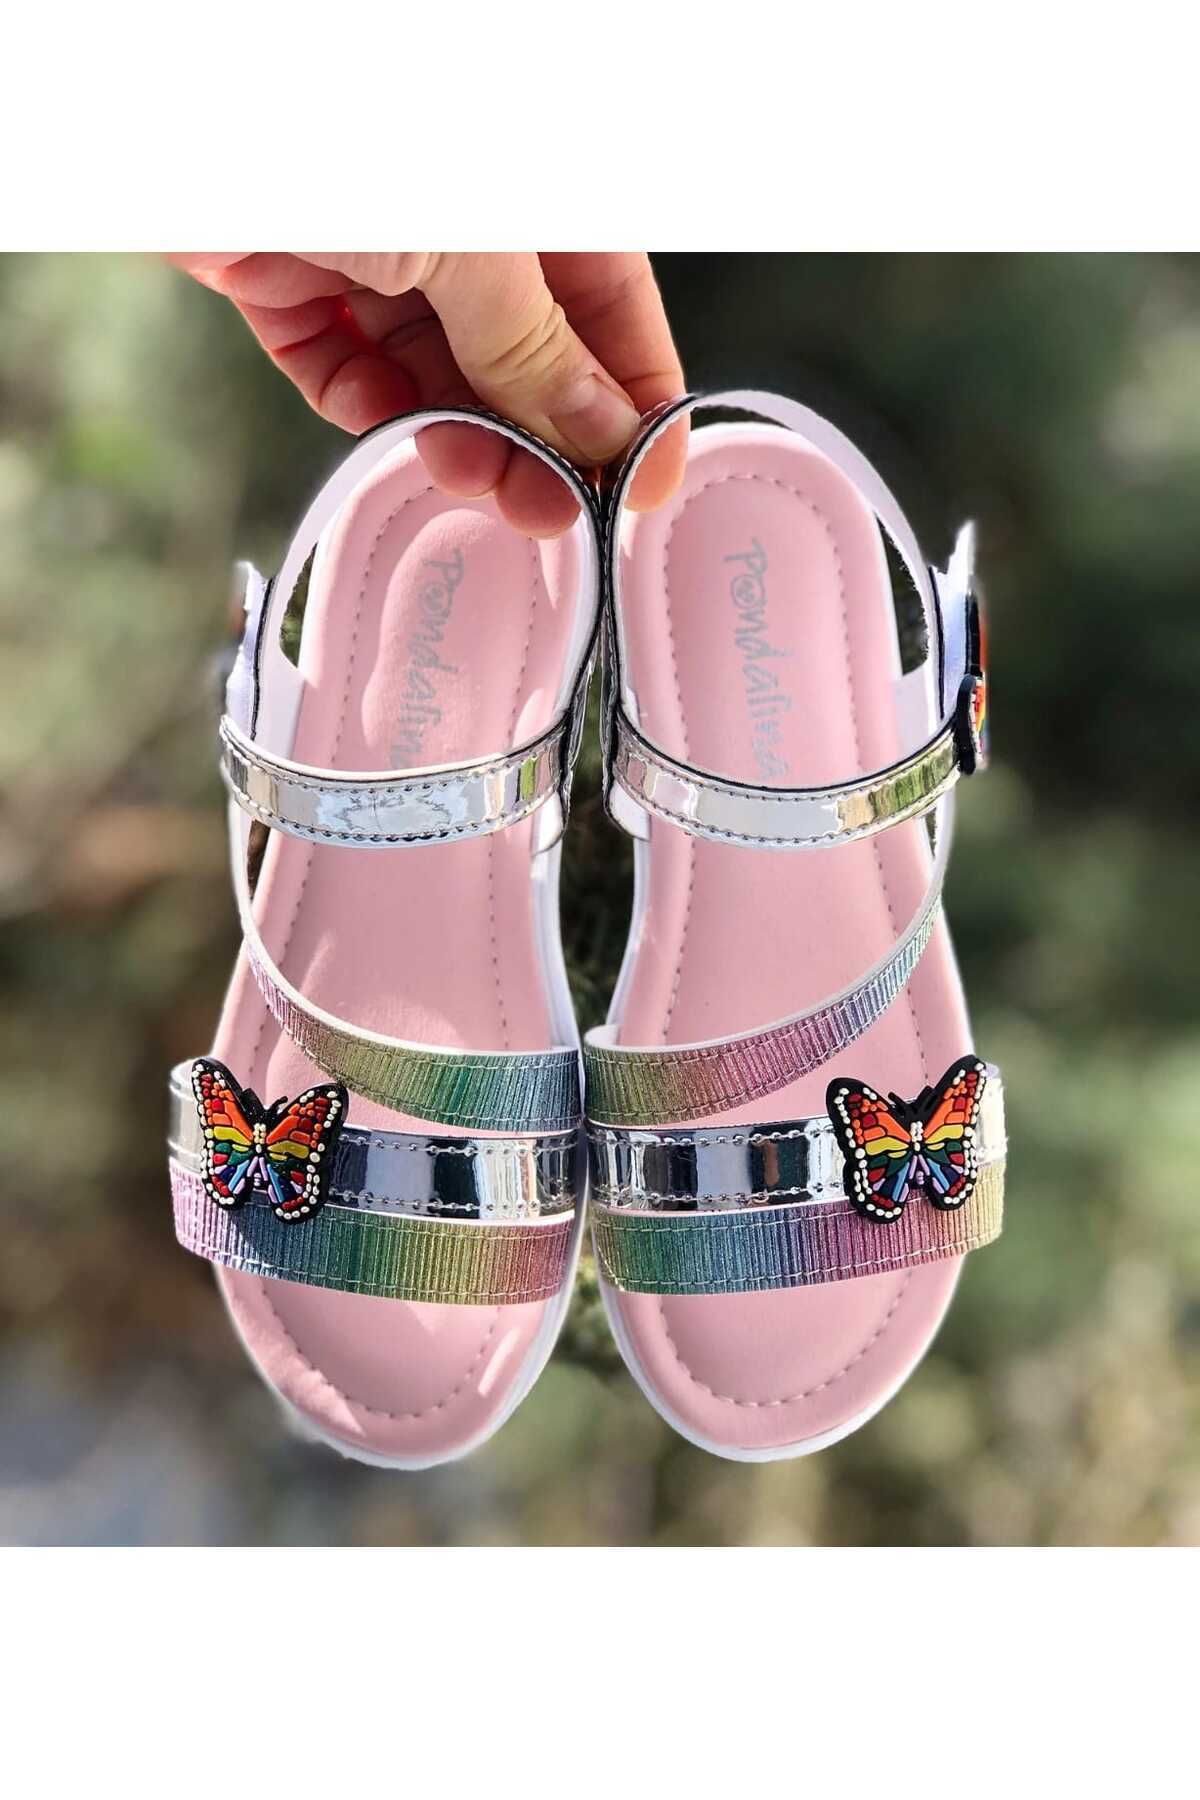 Pandalina Çocuk sandalet cırt cırtlı  kelebek figürlü kaydırmaz  taban  yazlık çocuk ayakkabısı